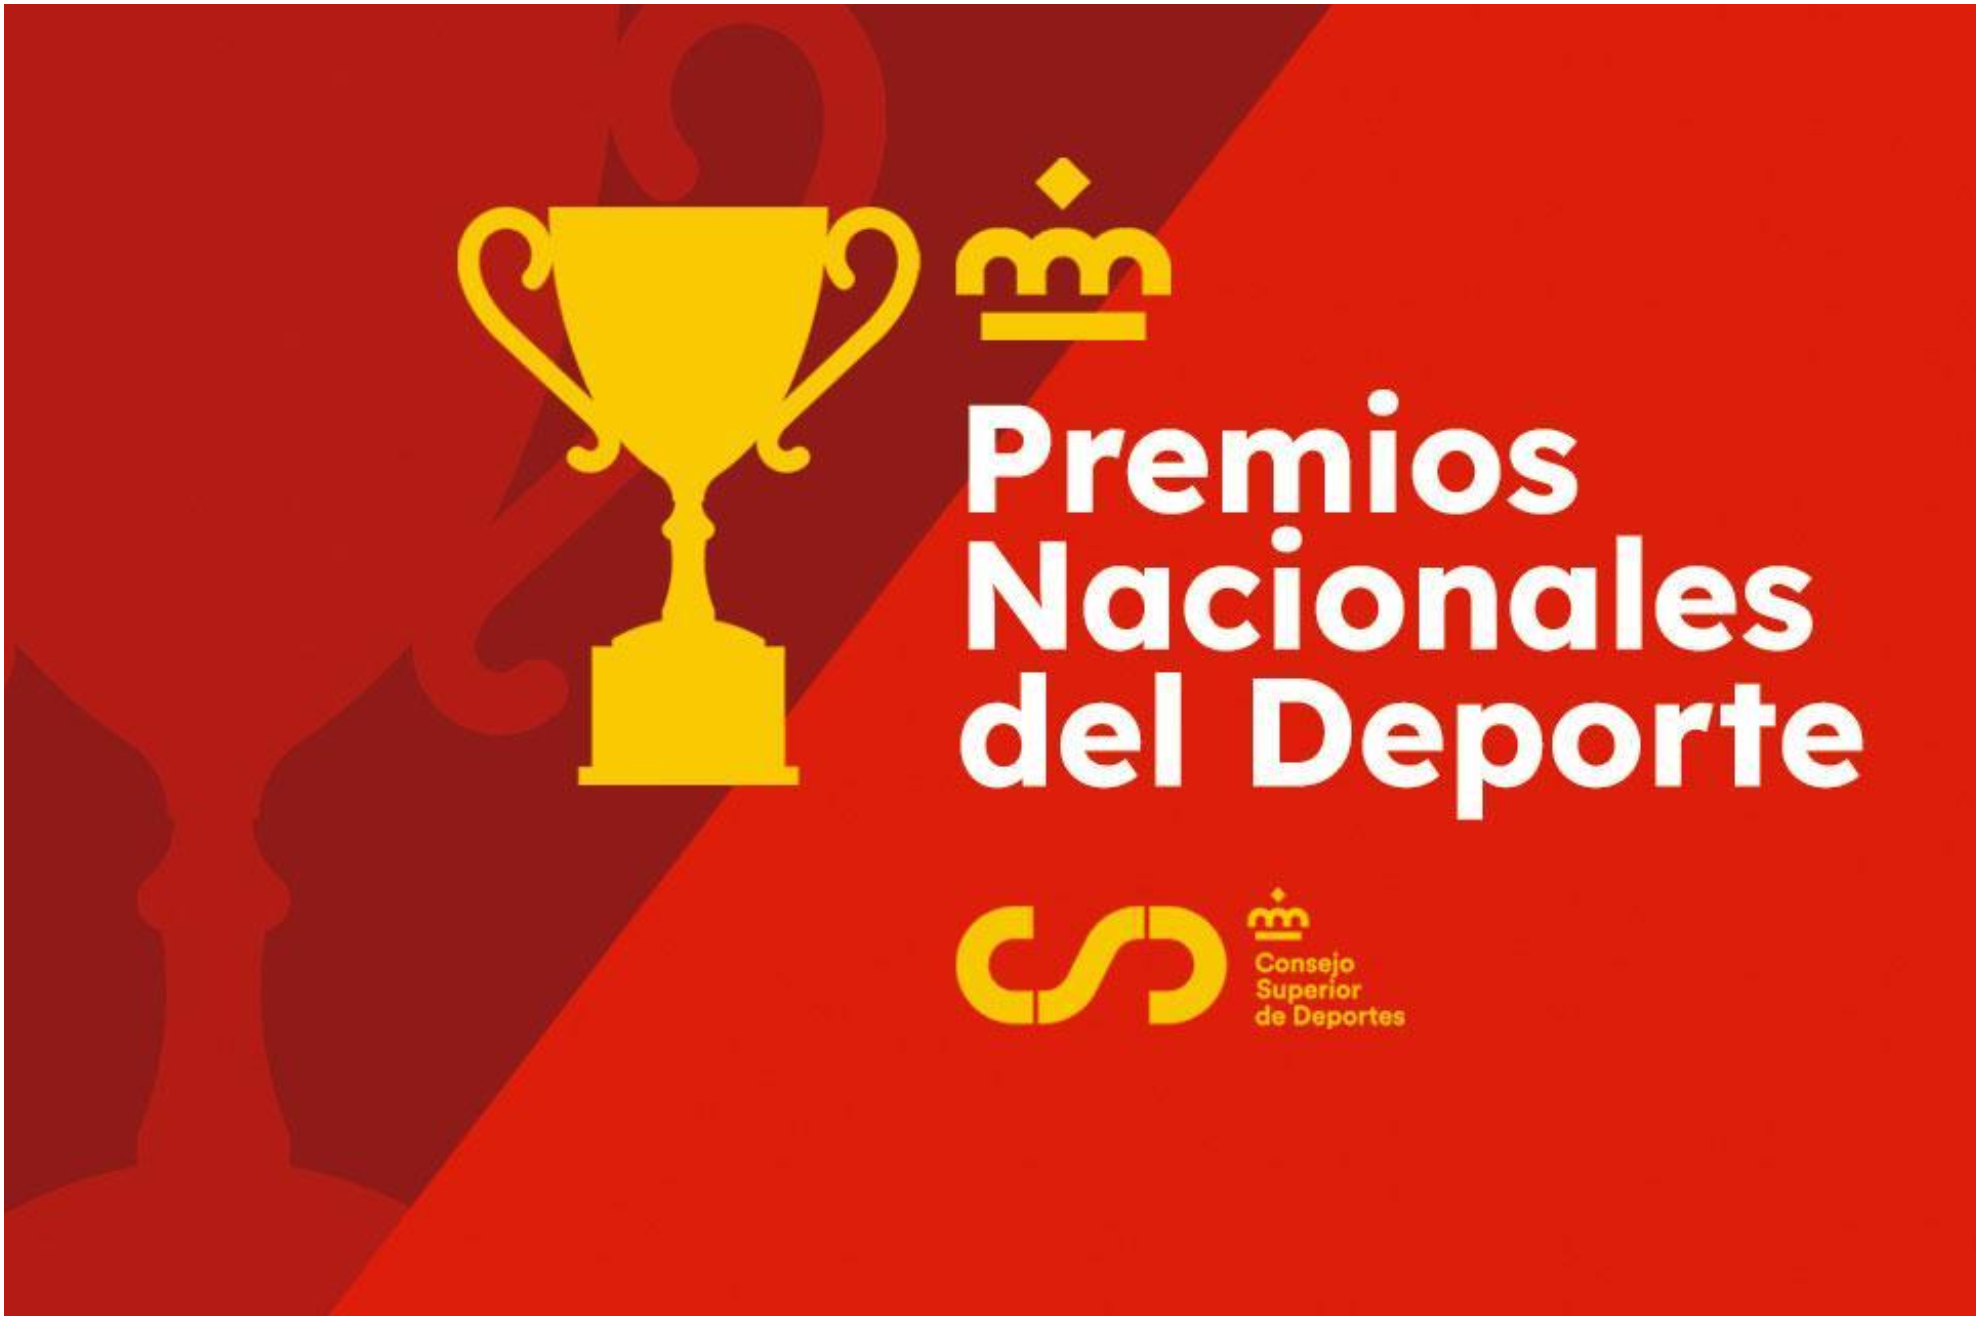 La imagen de los Premios Nacionales del Deporte.